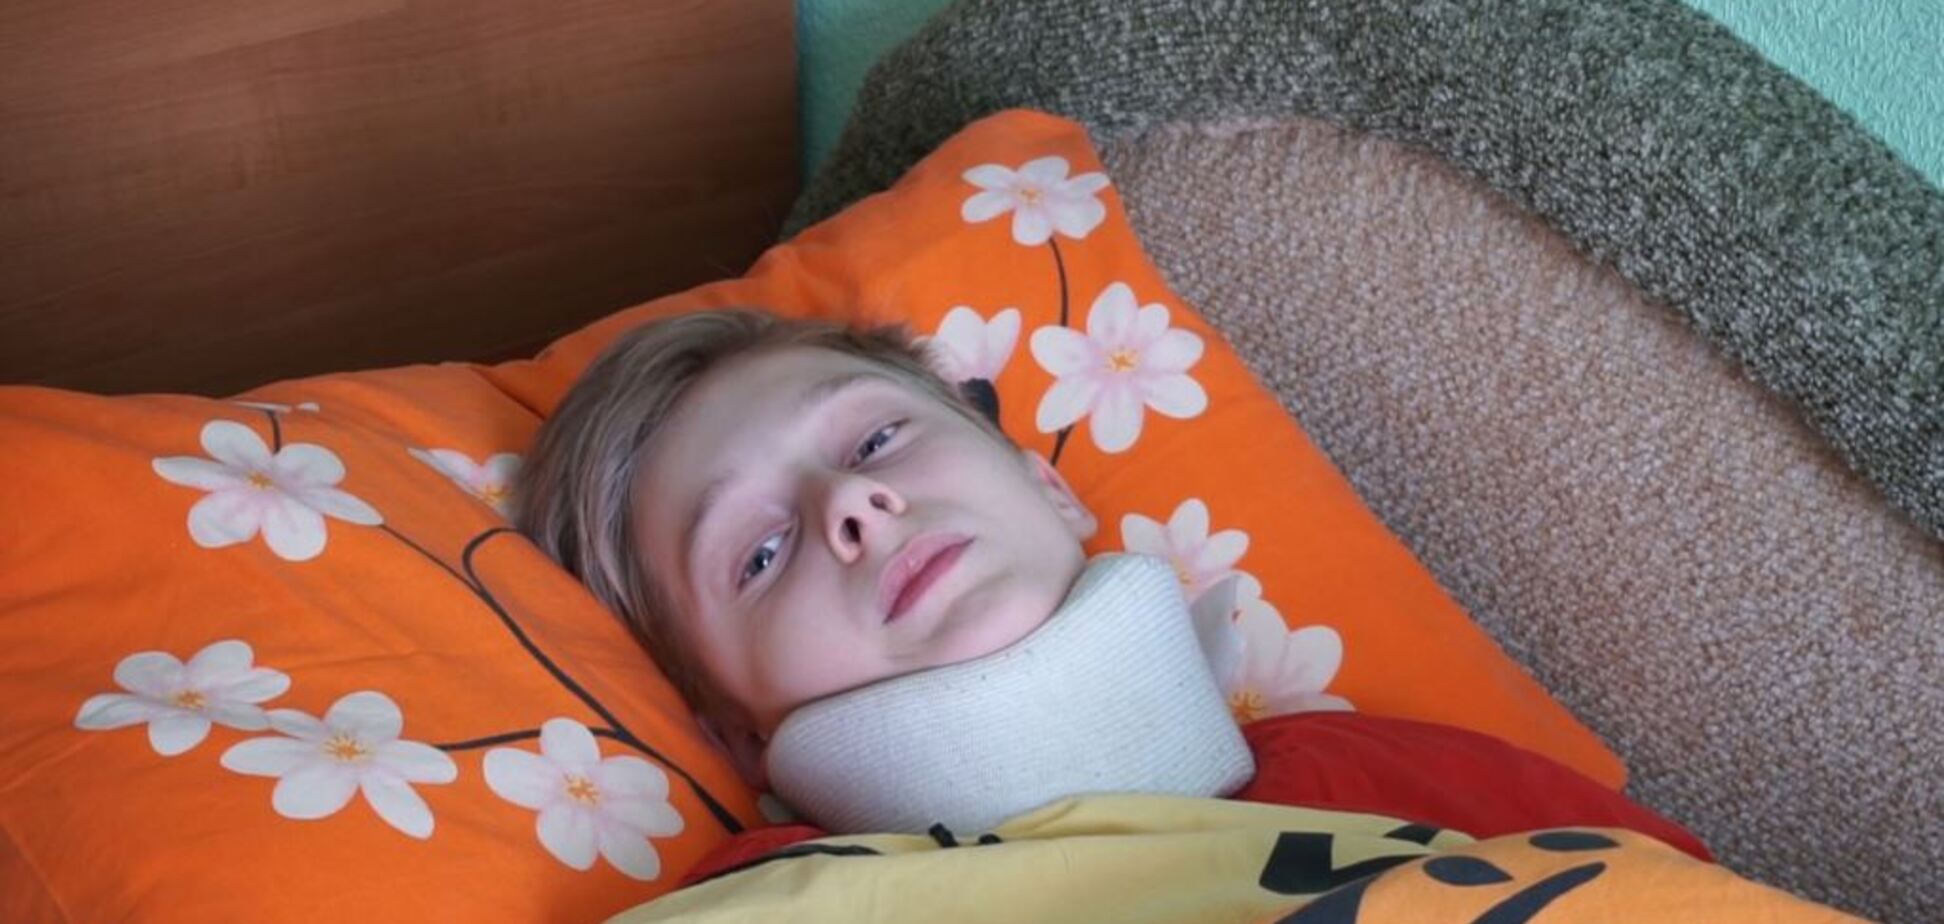 Сломали позвонки: избитый школьник рассказал о буллинге в престижном лицее Киева